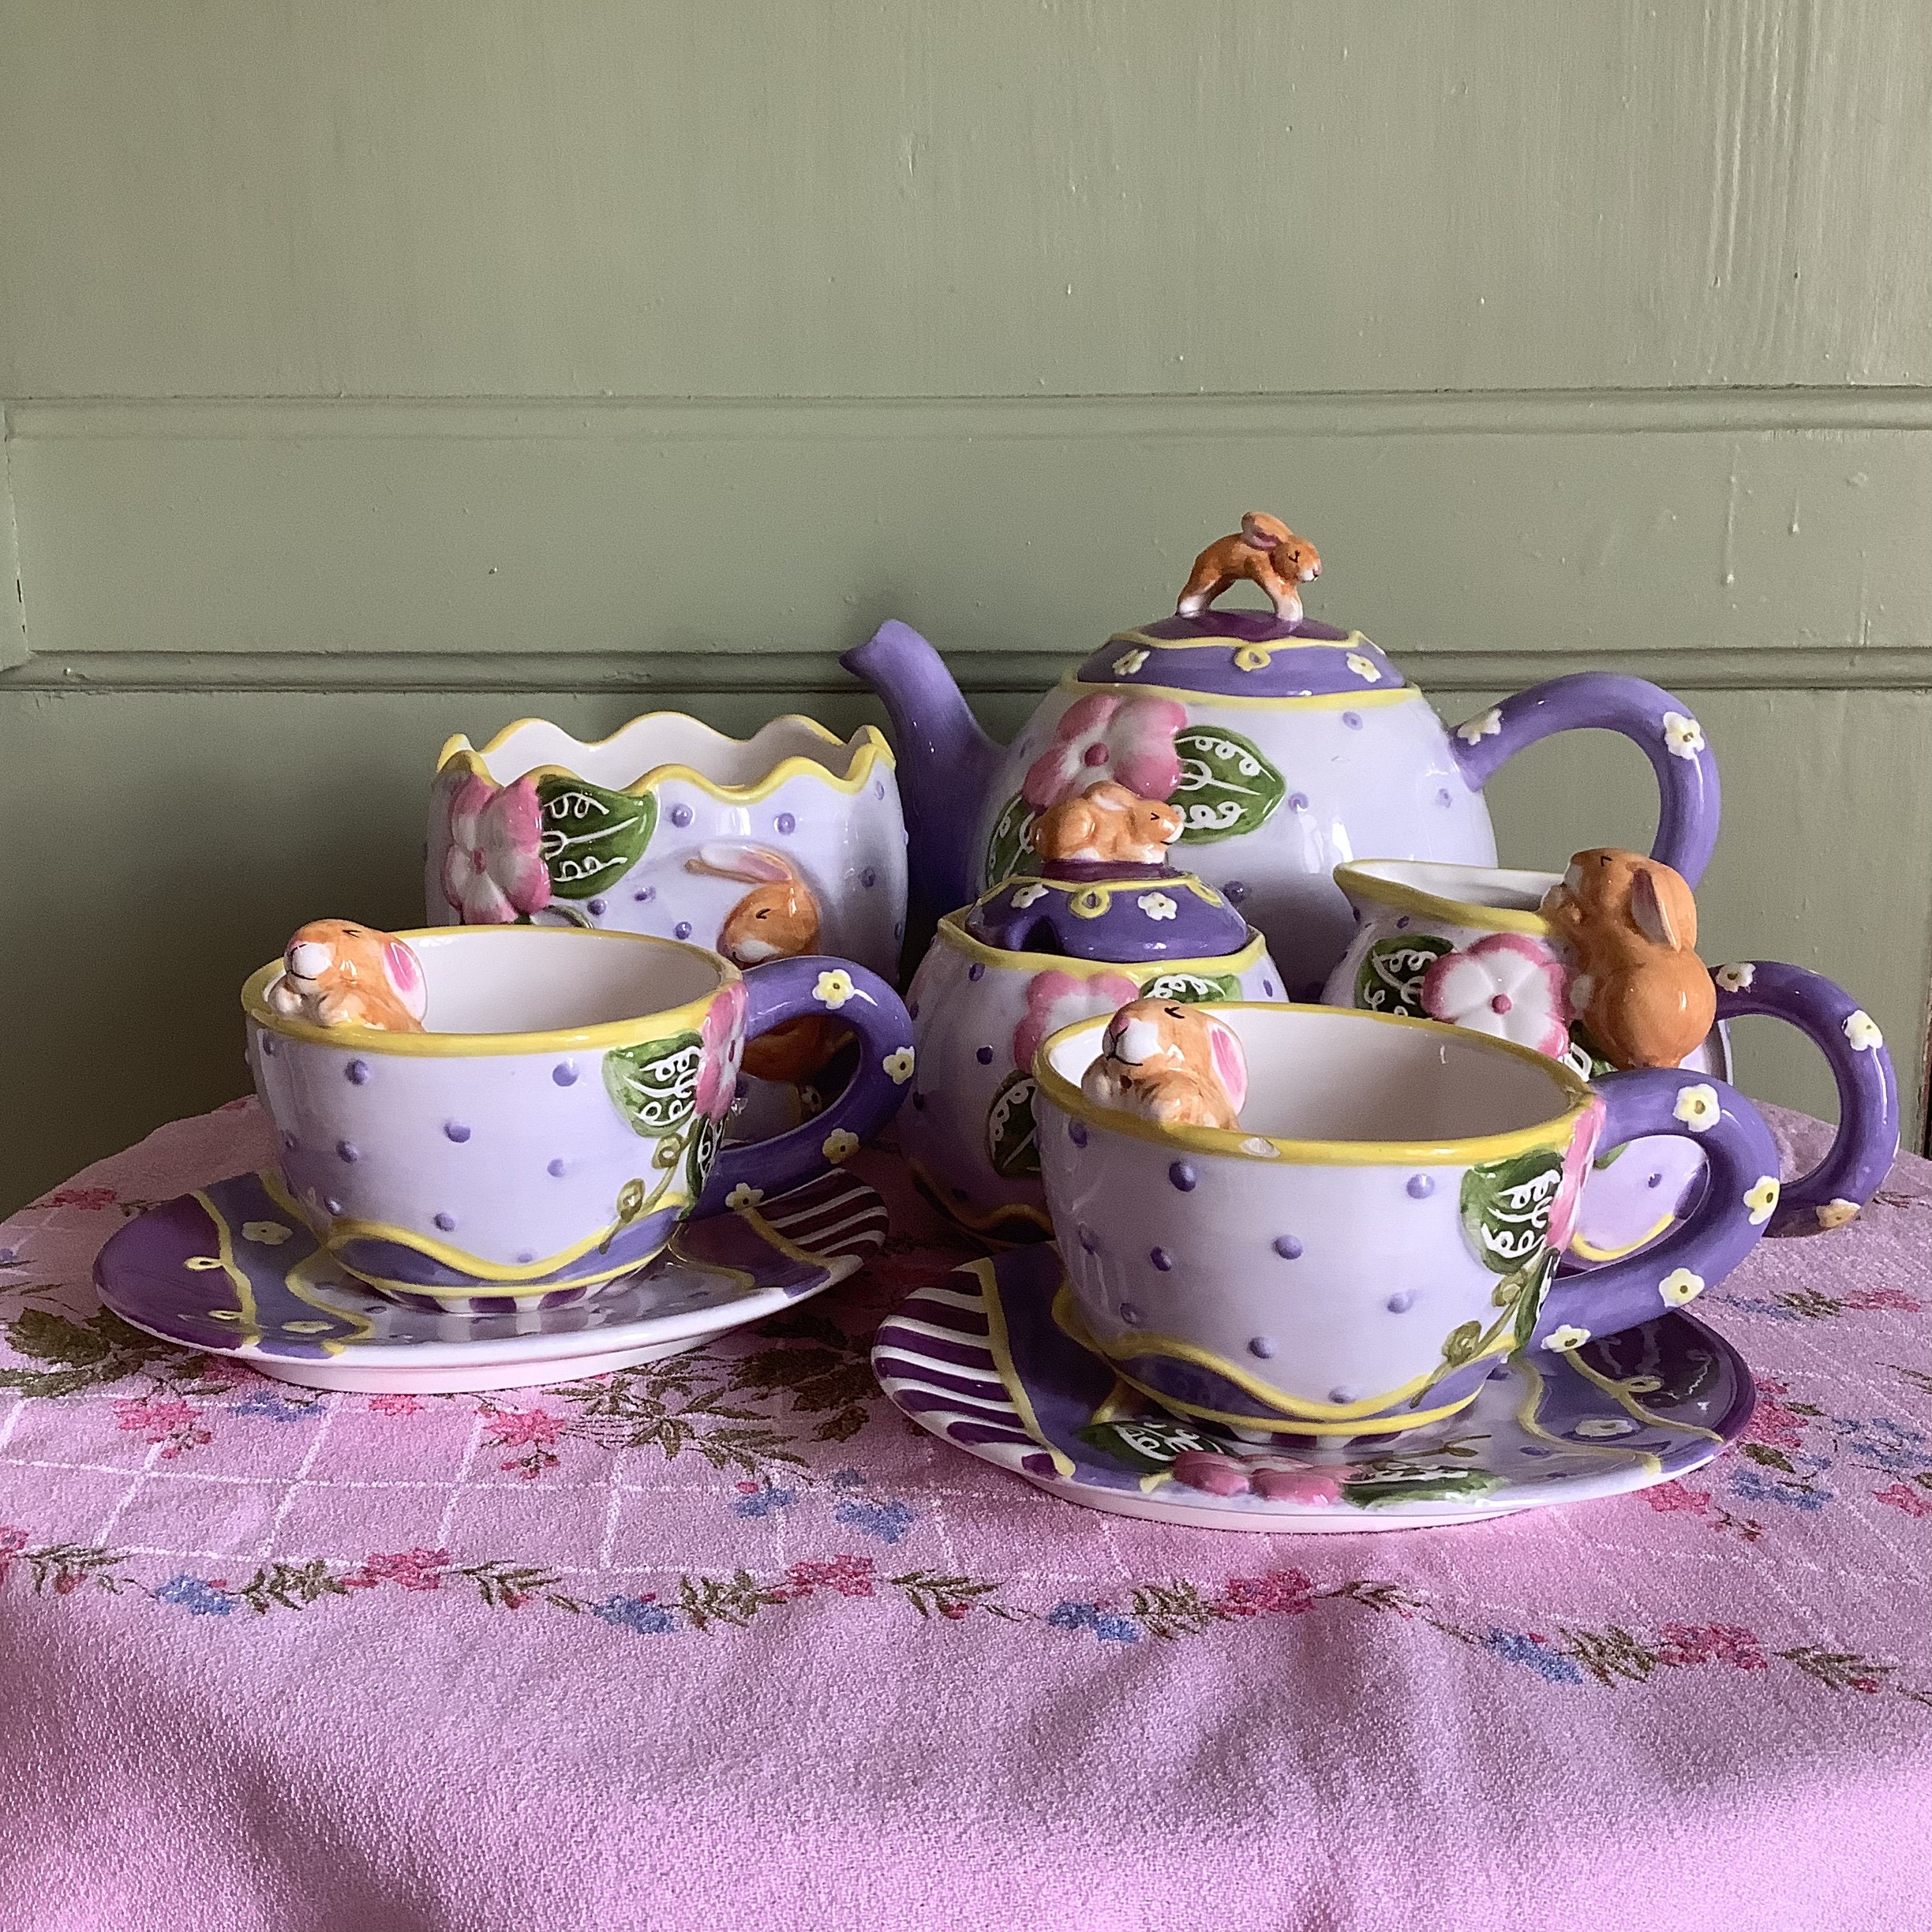 Reutter Porzellan Alice in Wonderland Tea Set for 4 with Picnic Basket